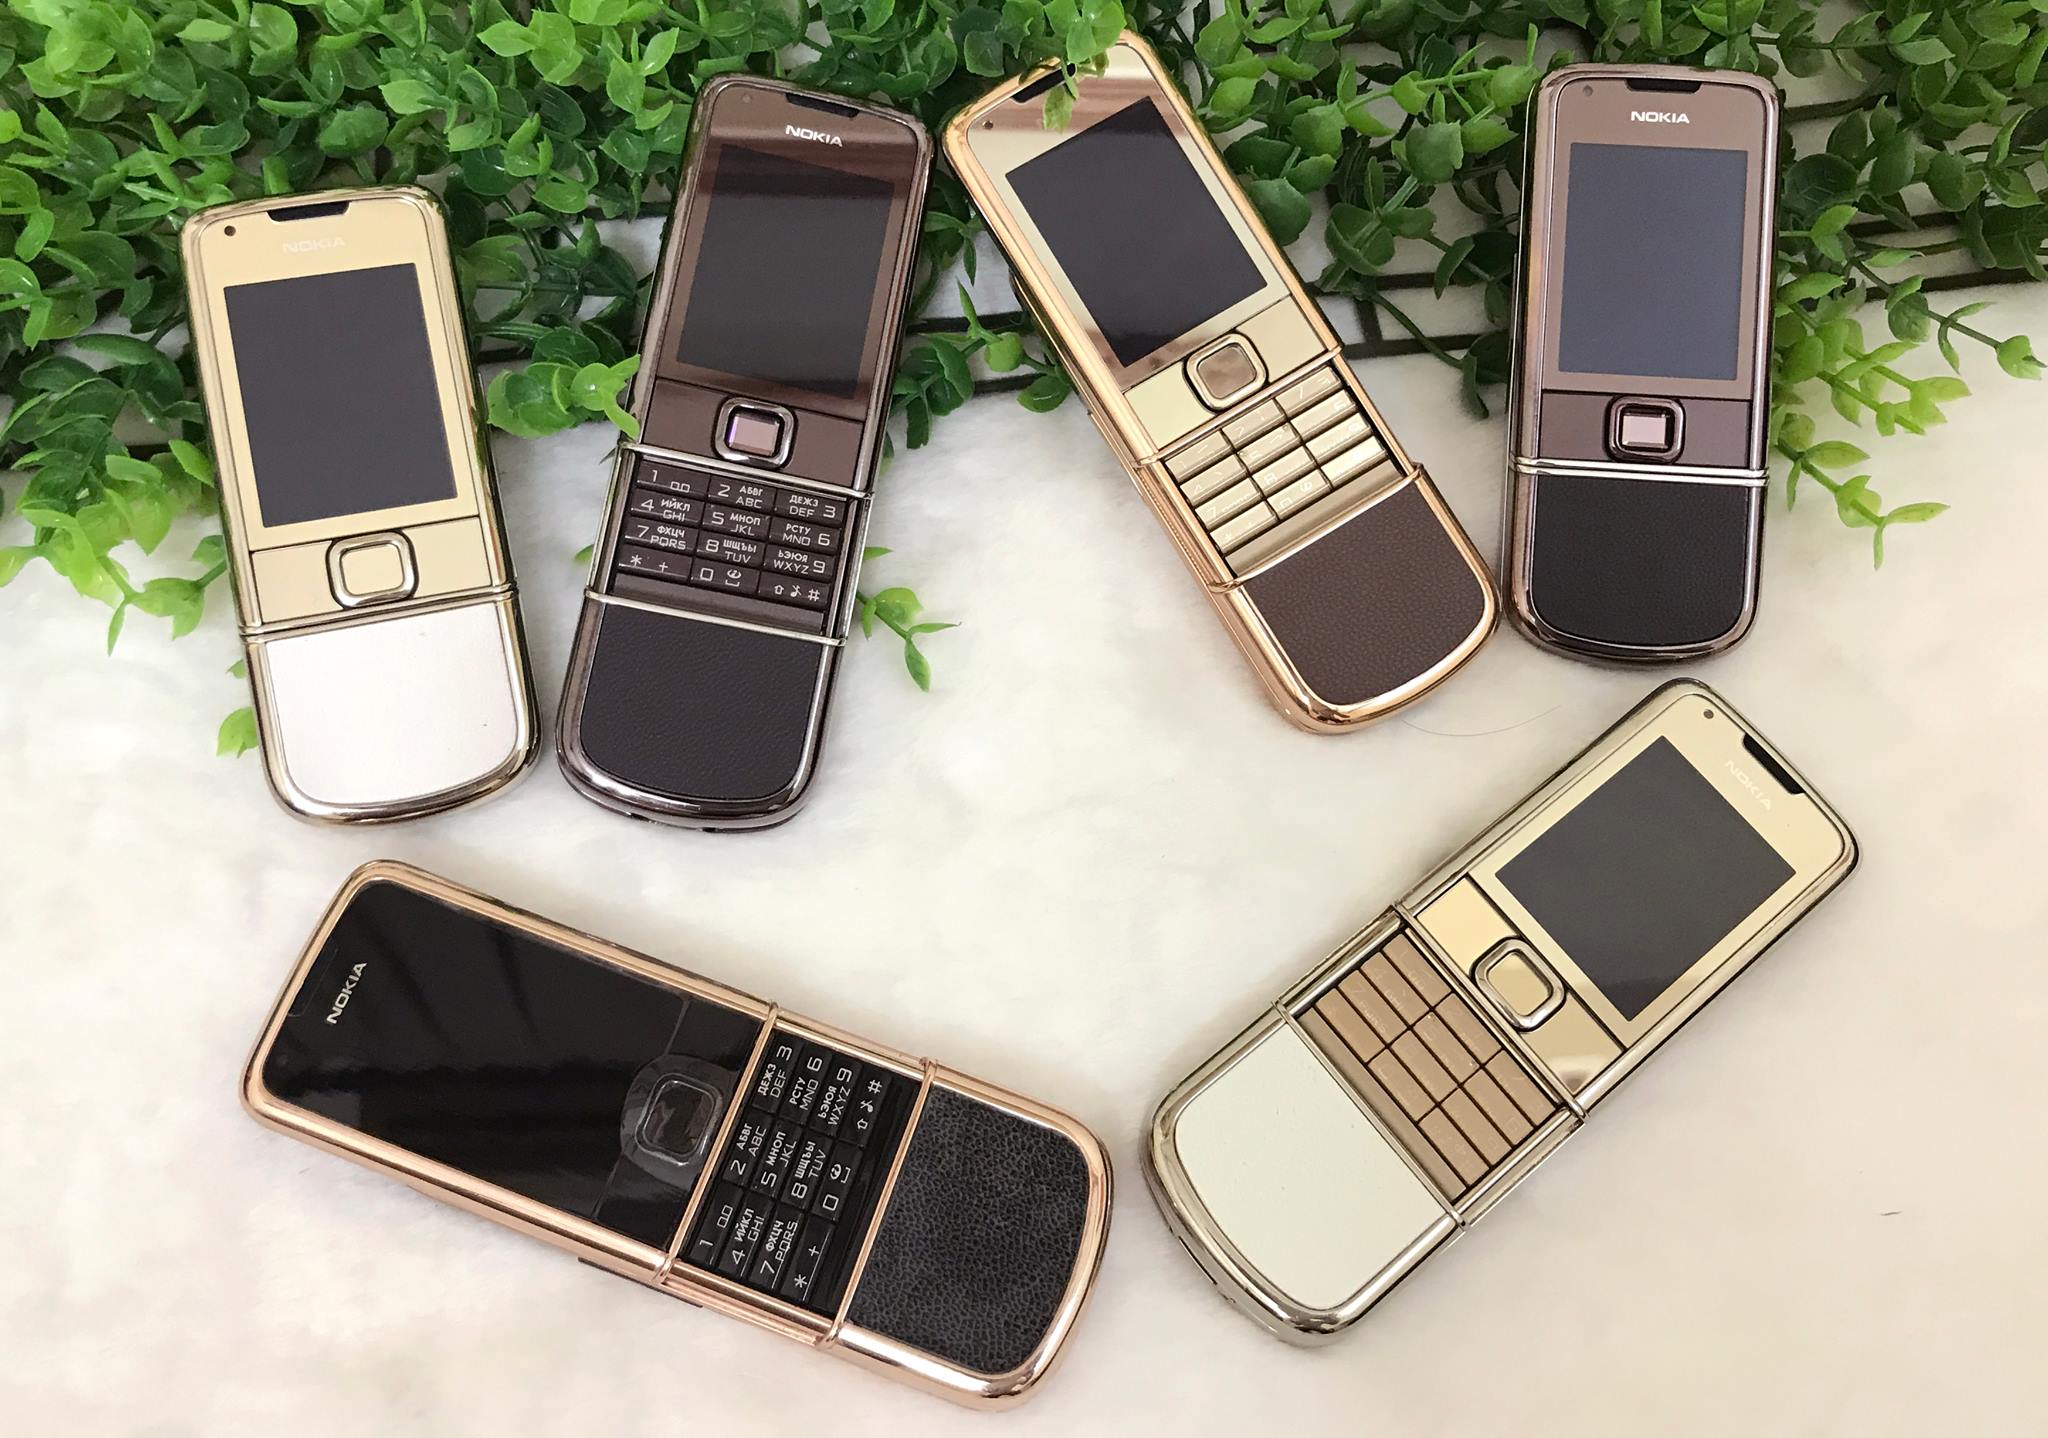 Thu mua điện thoại Nokia 8800, Vertu, Mobiado Cũ tại Hà Nội giá cao